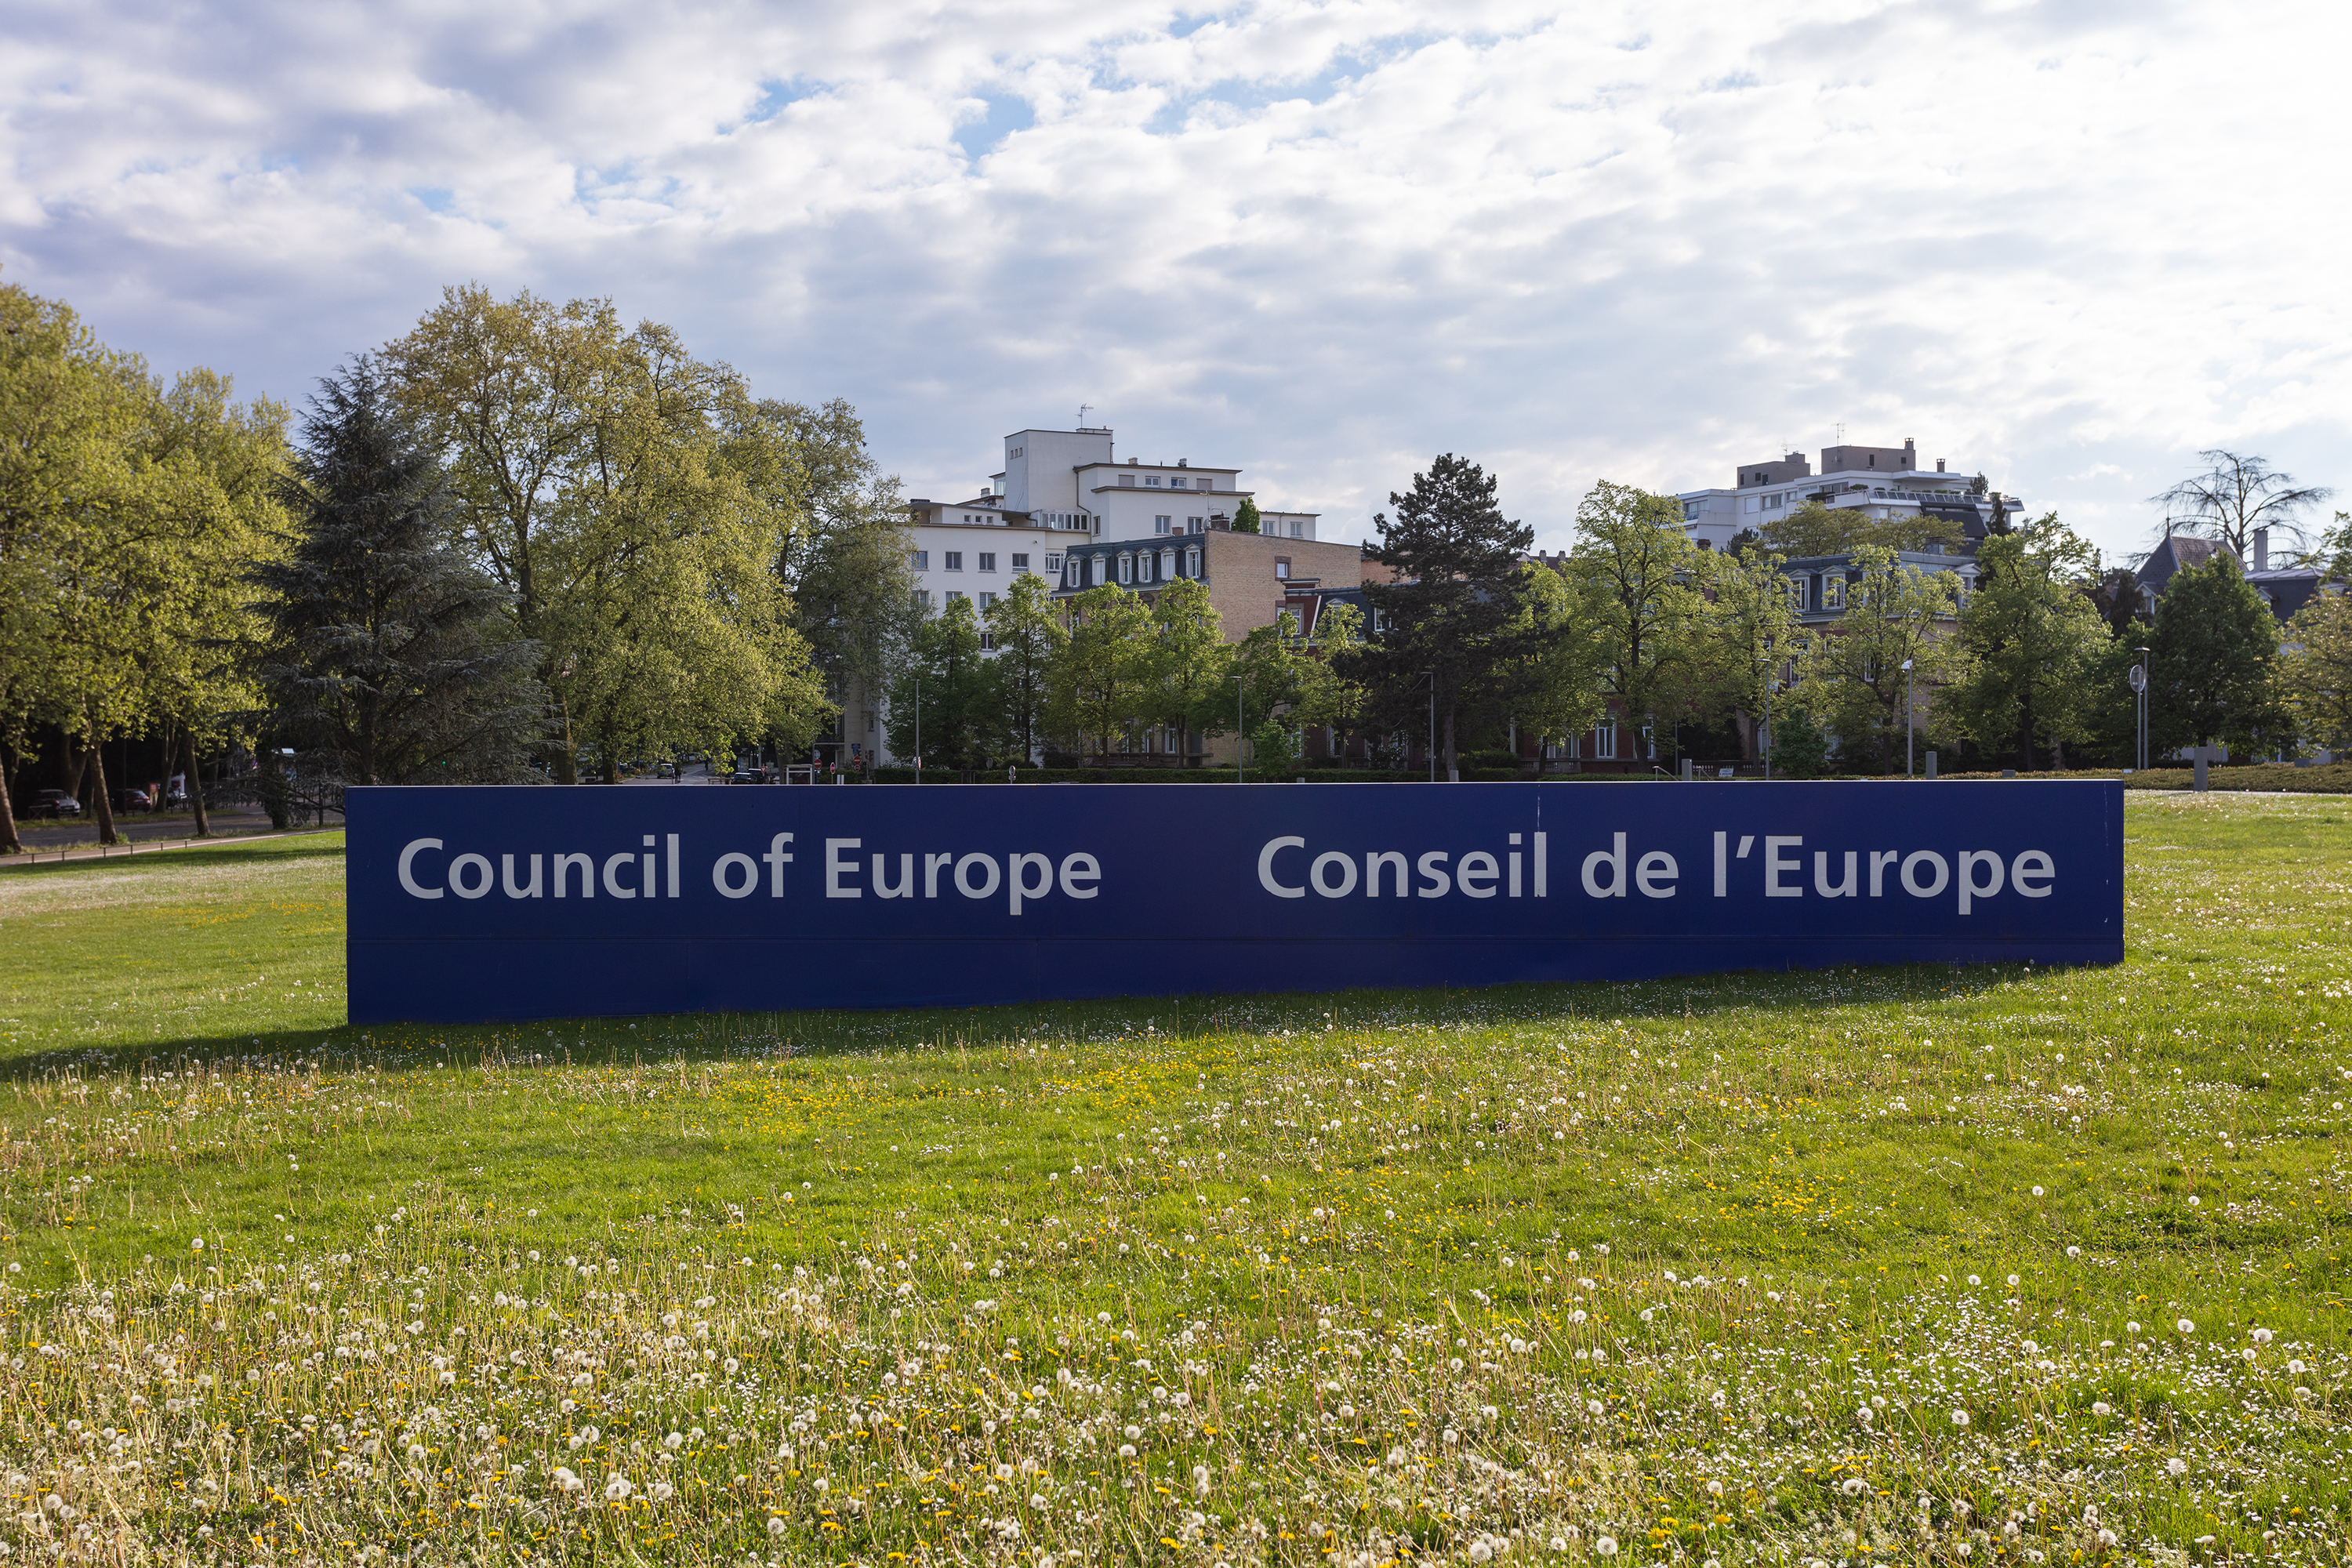 Council of Europe garden